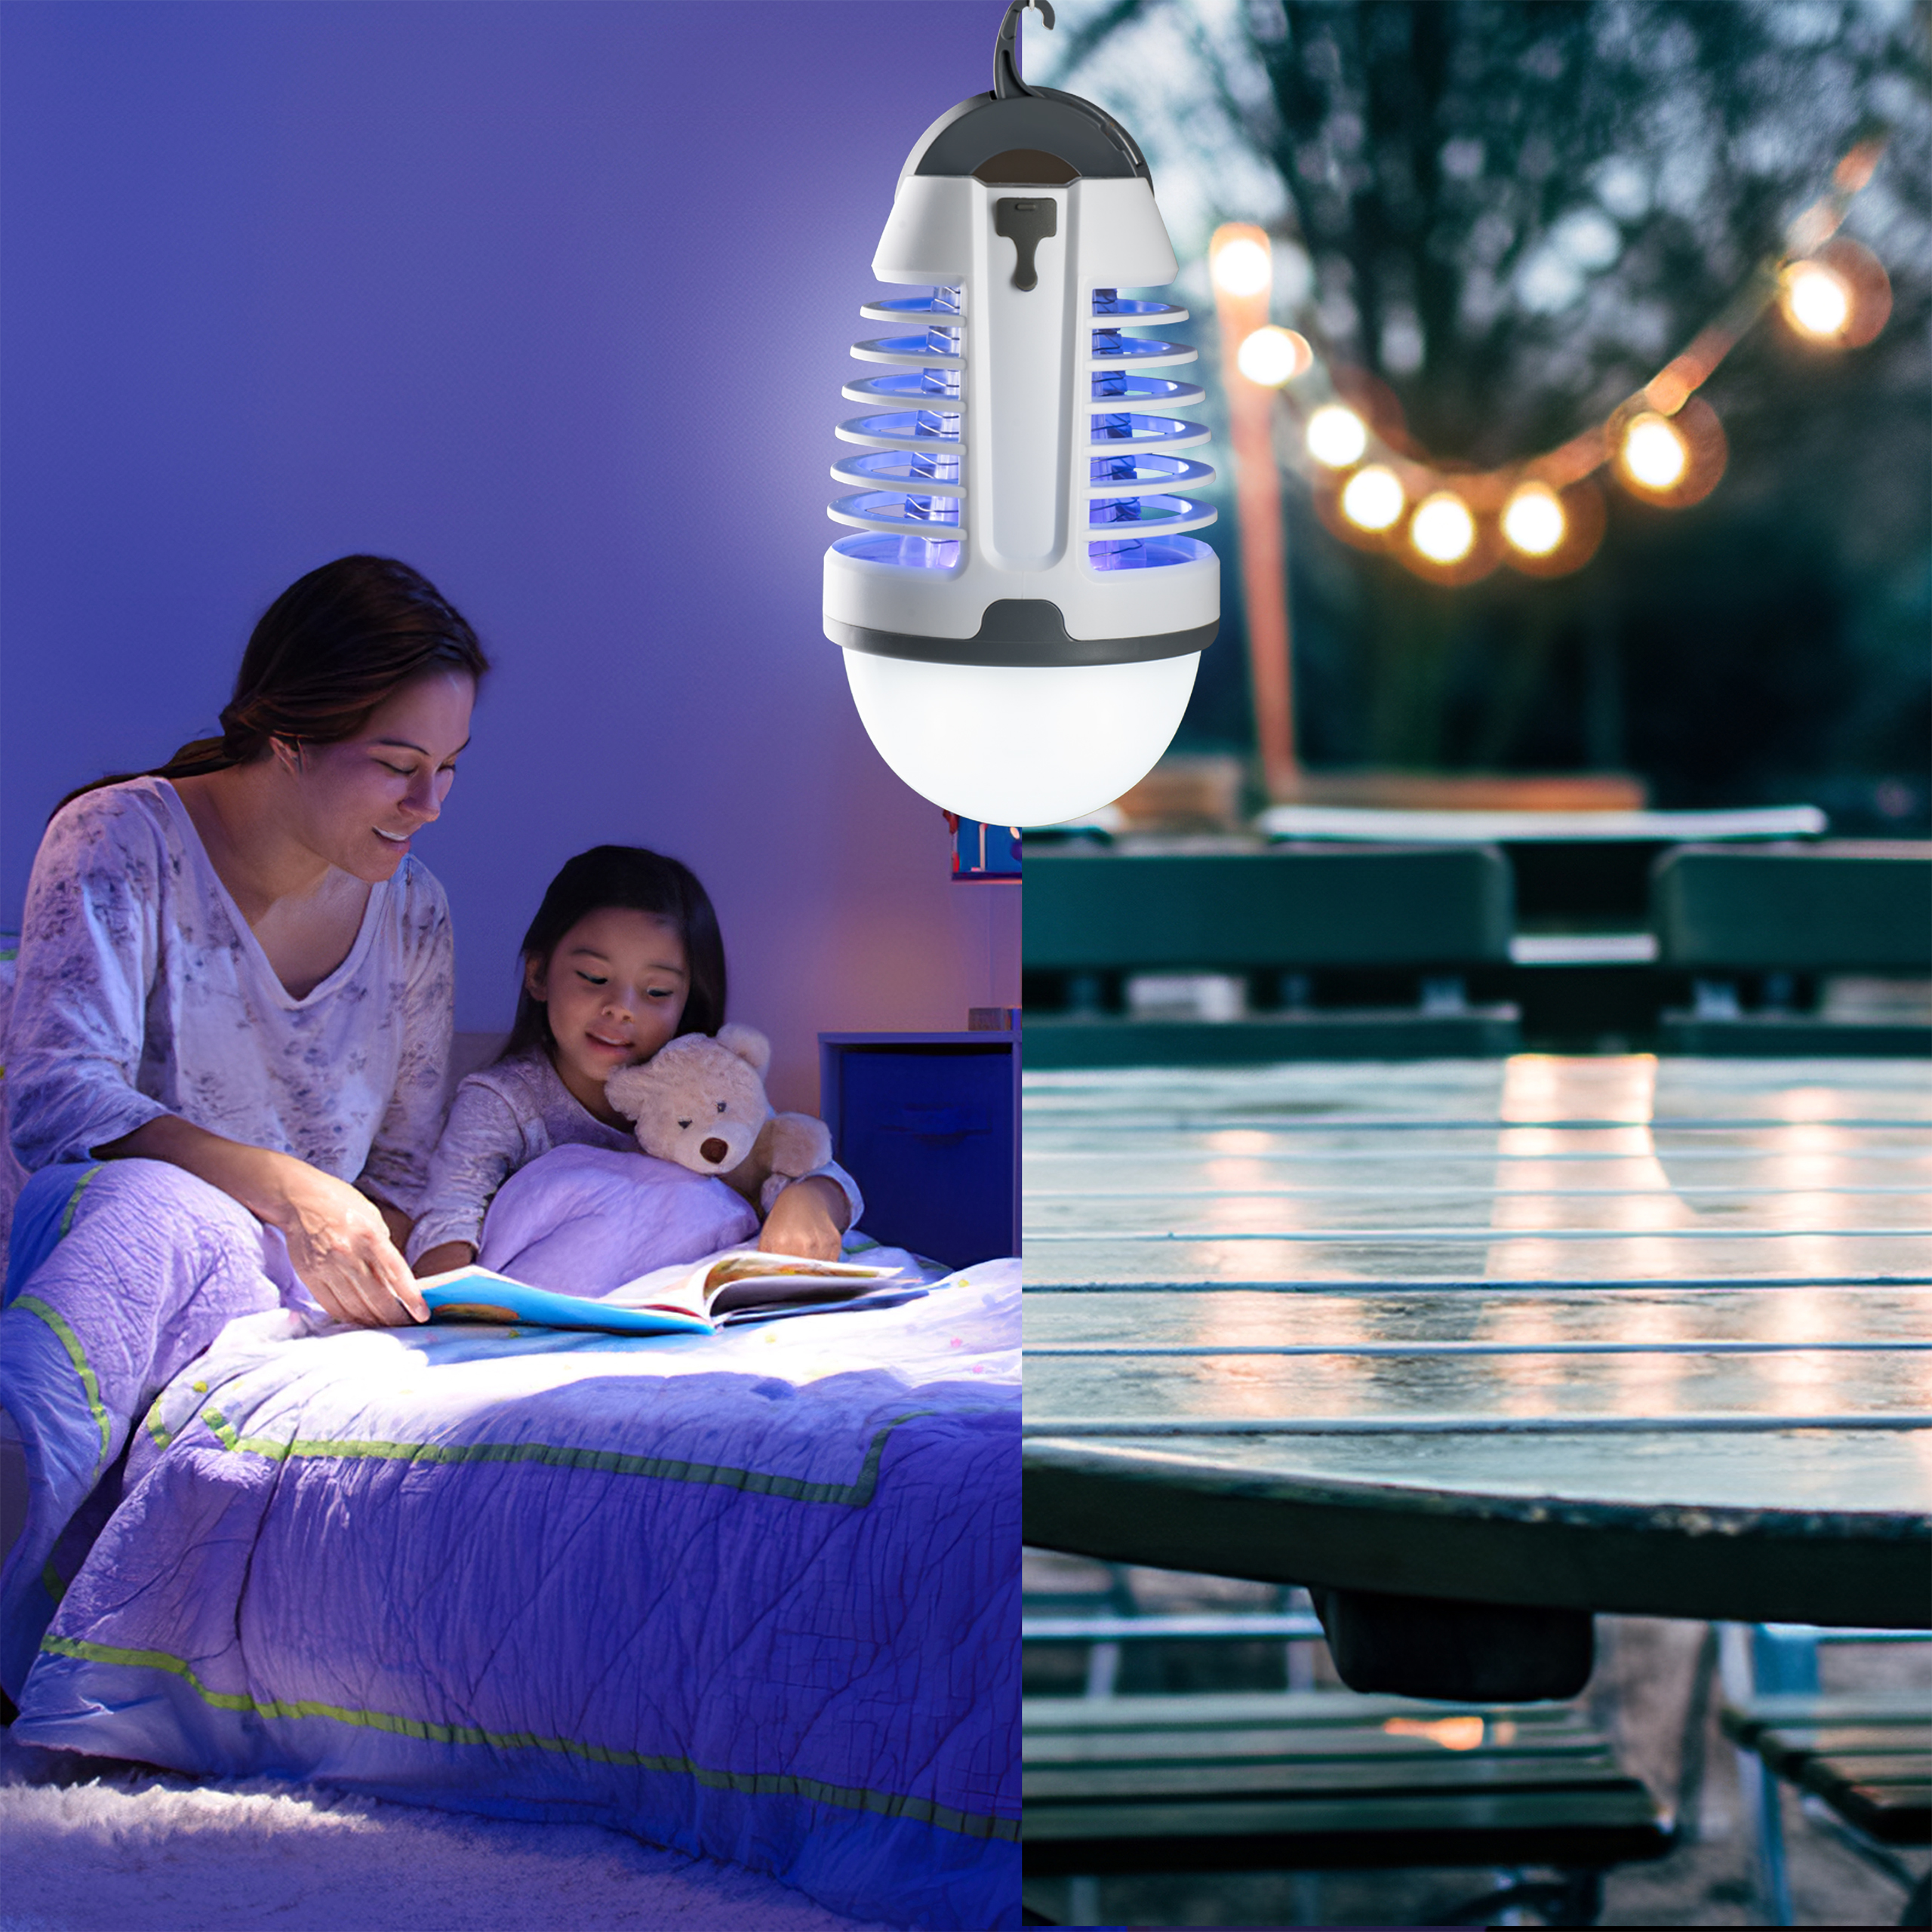 Chemiefrei kashyk Moskito Killer Licht ，USB Elektrischer Insektenvernichter mit Ansaugventilator,Haushalt LED Nachtlicht Mücke Inhalation Typ Innen Mückenfalle,in Küche,Garten